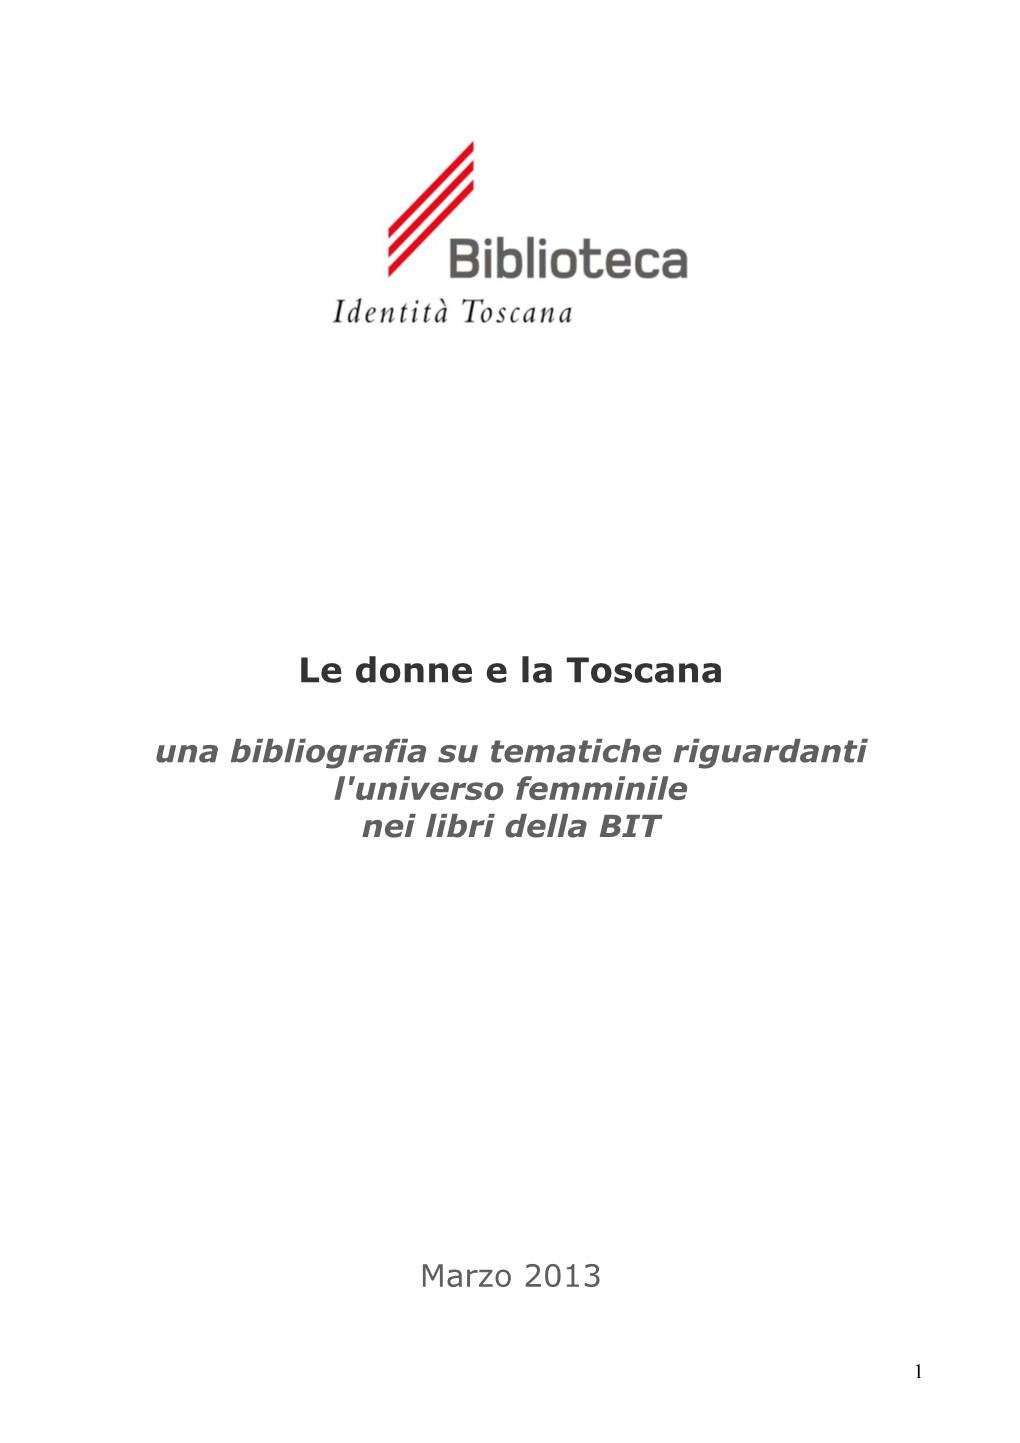 Le Donne E La Toscana Una Bibliografia Su Tematiche Riguardanti L'universo Femminile Nei Libri Della BIT